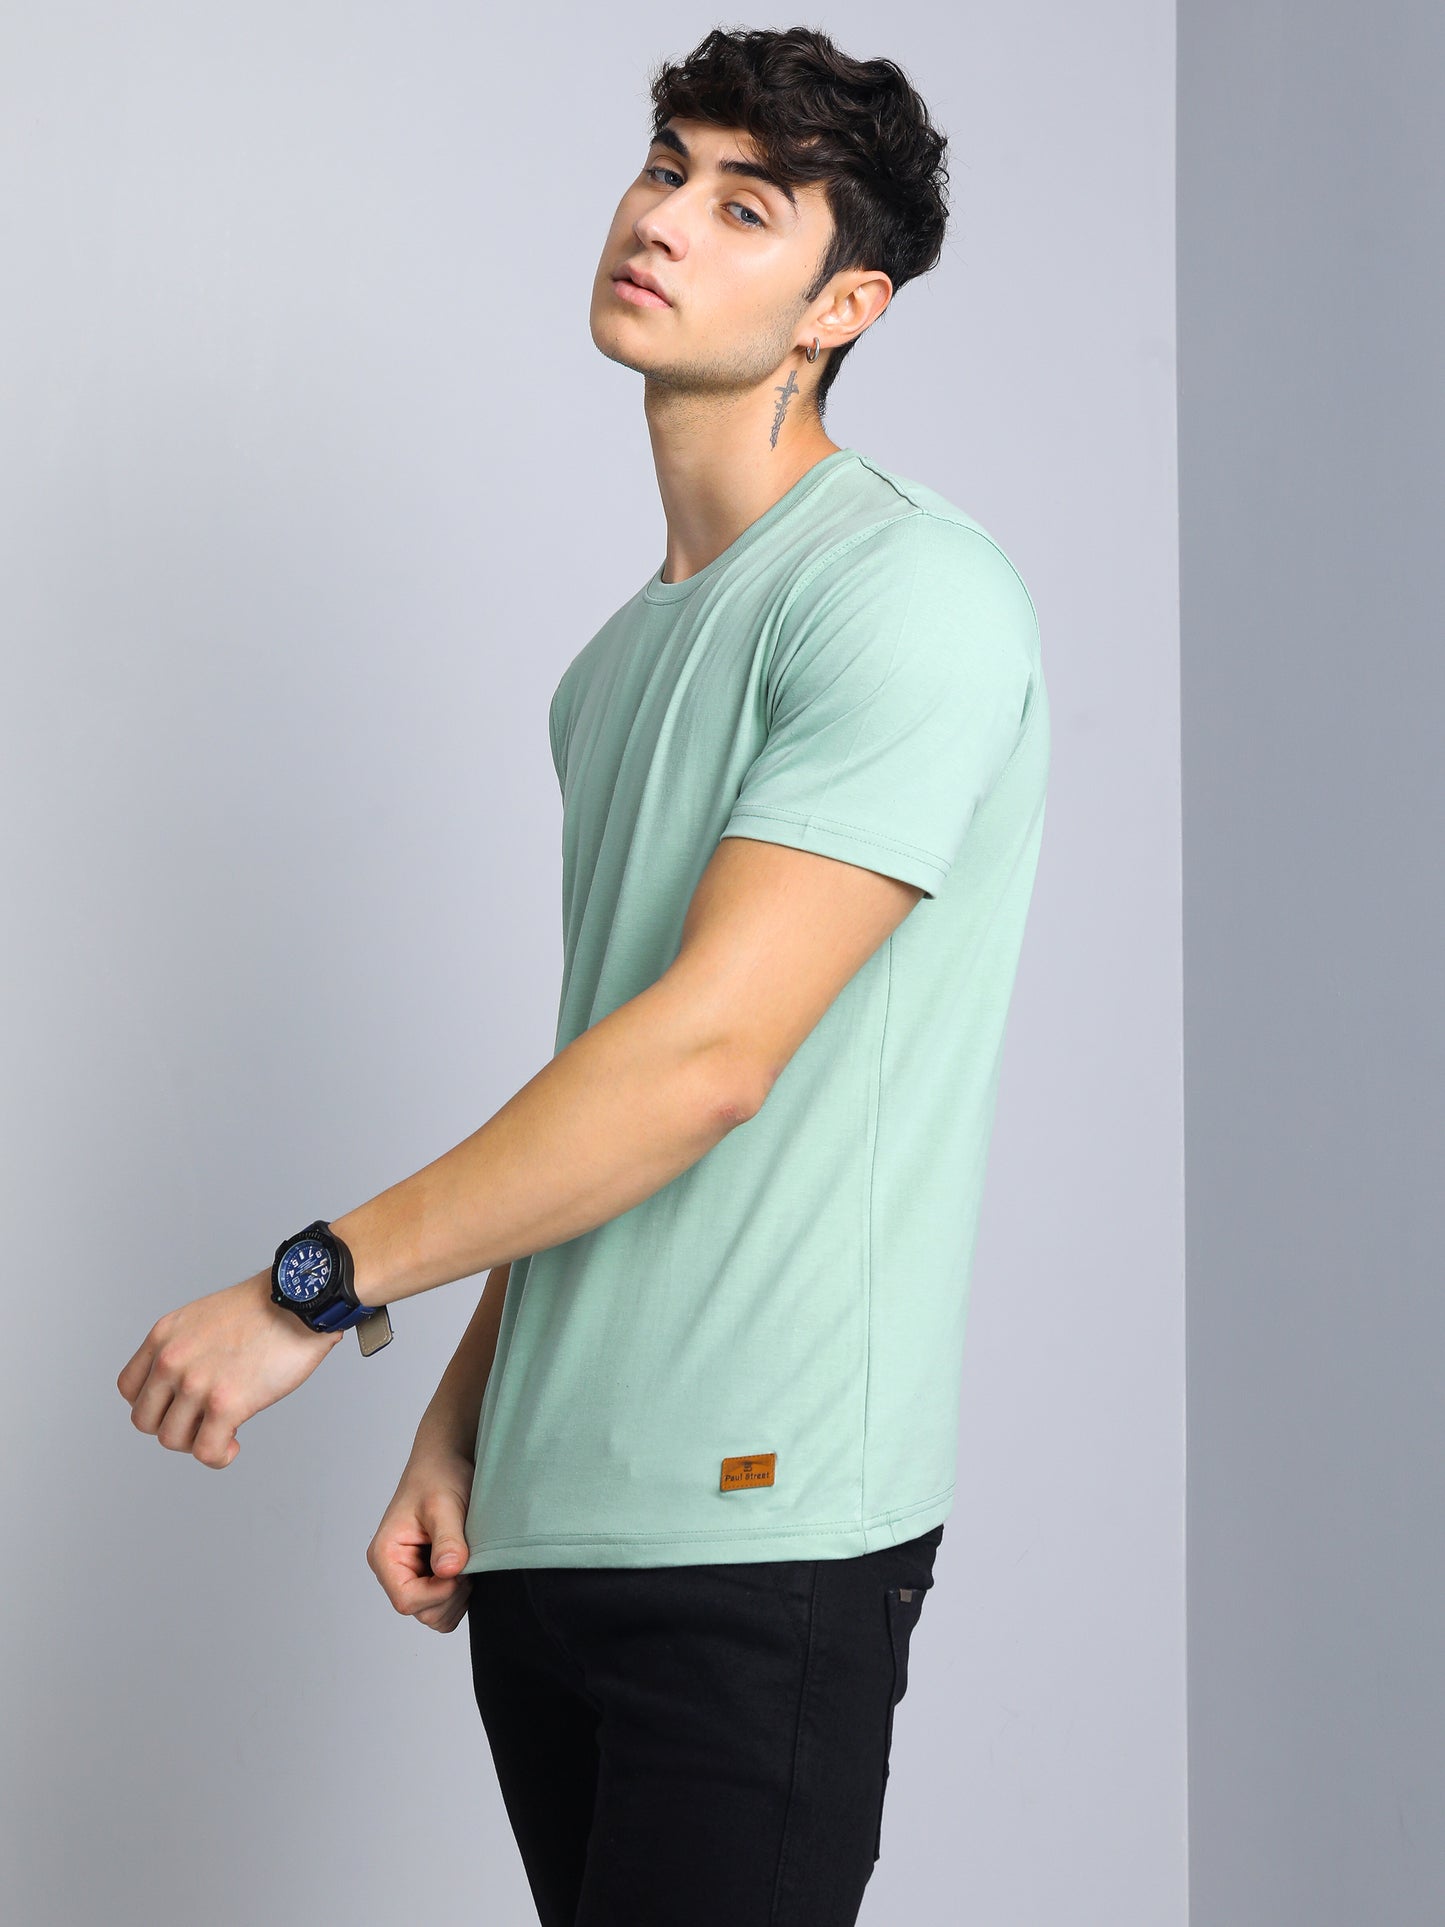 Plain Green T-Shirt